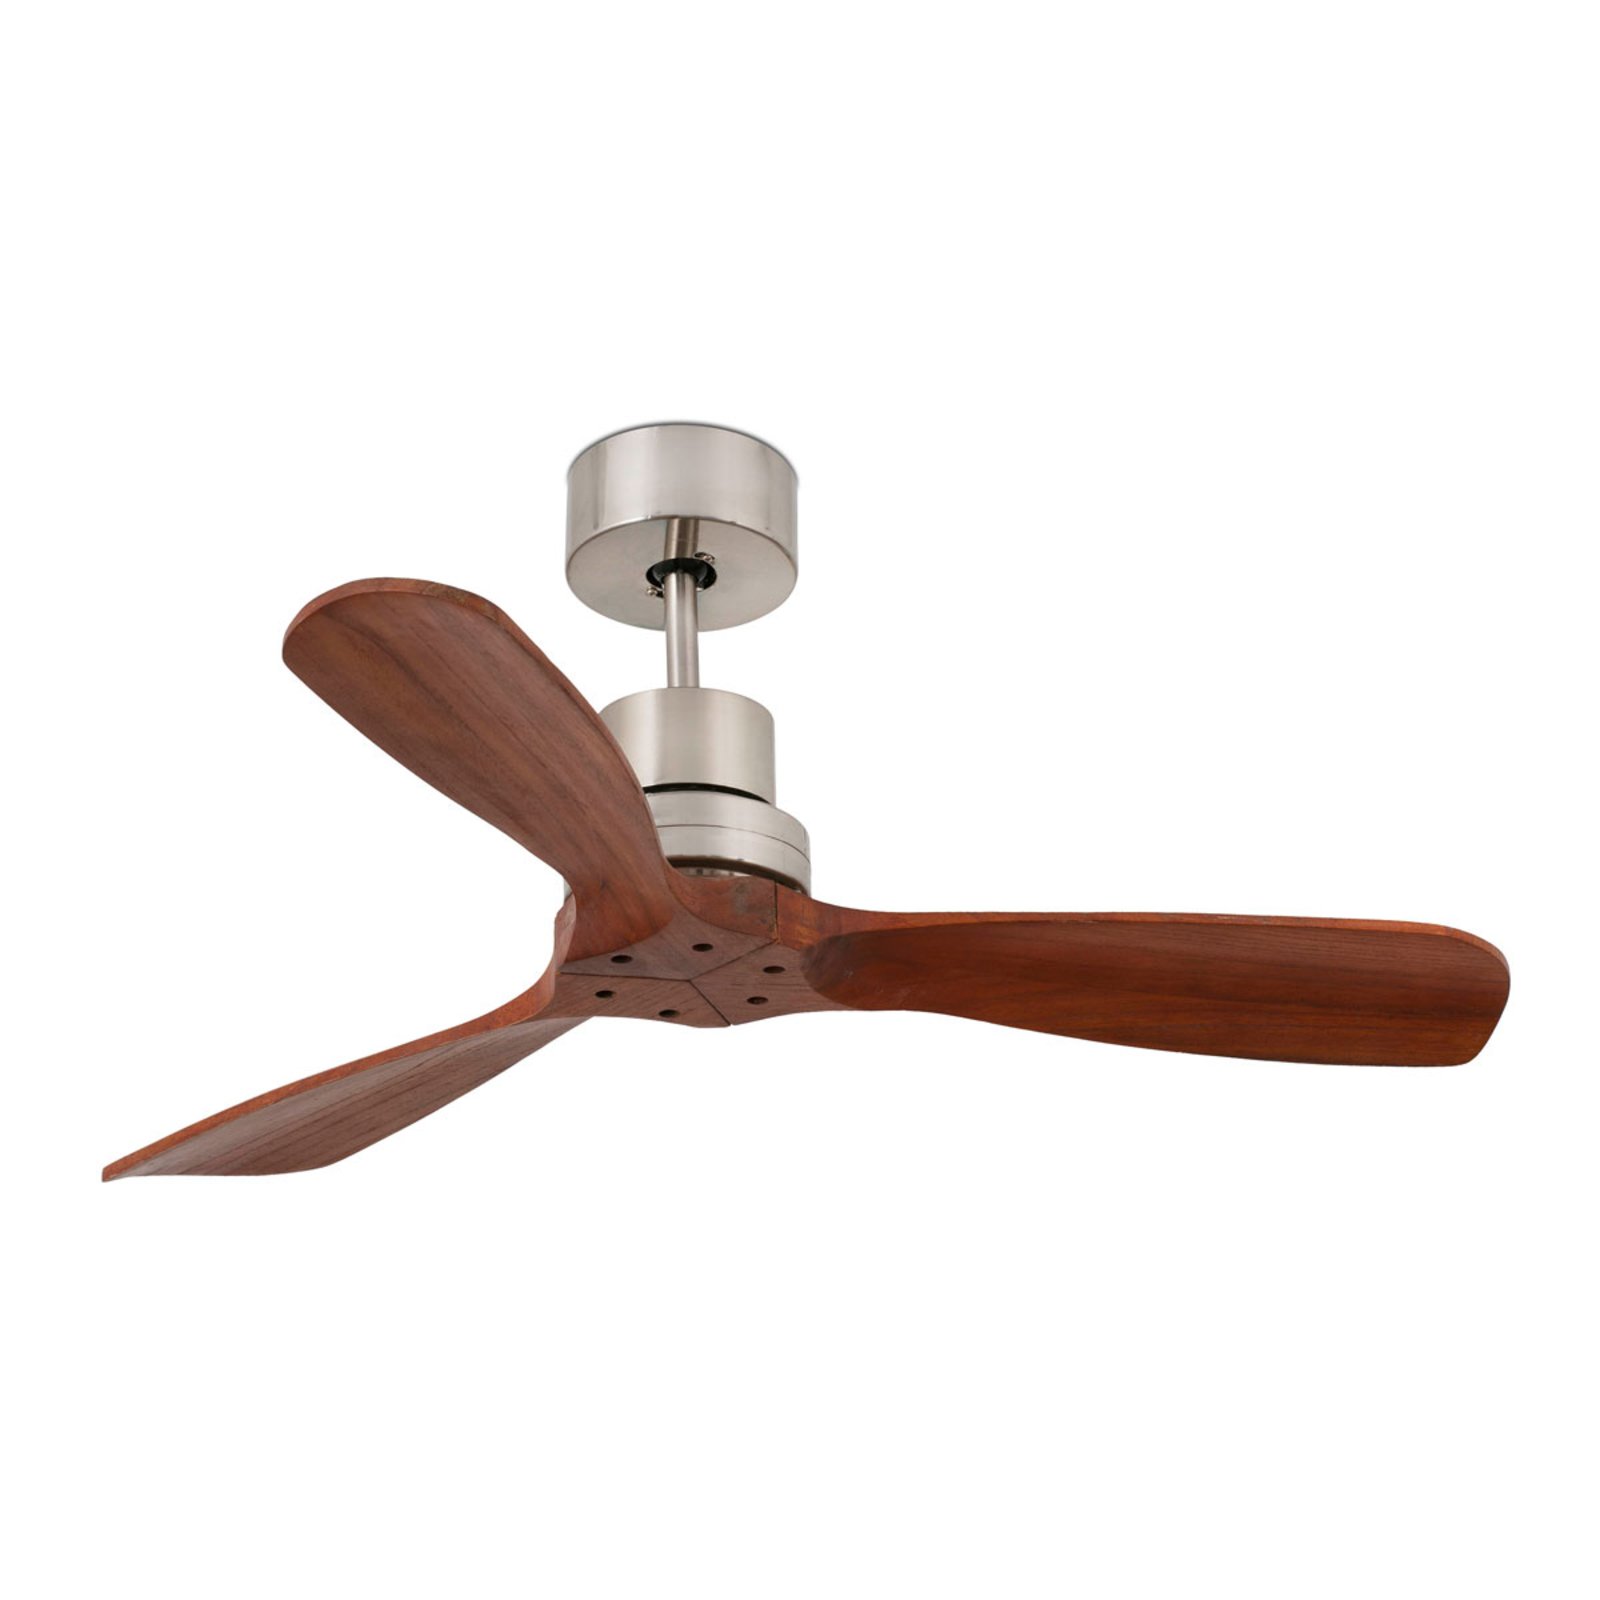 Mini Lantau ceiling fan with walnut wood